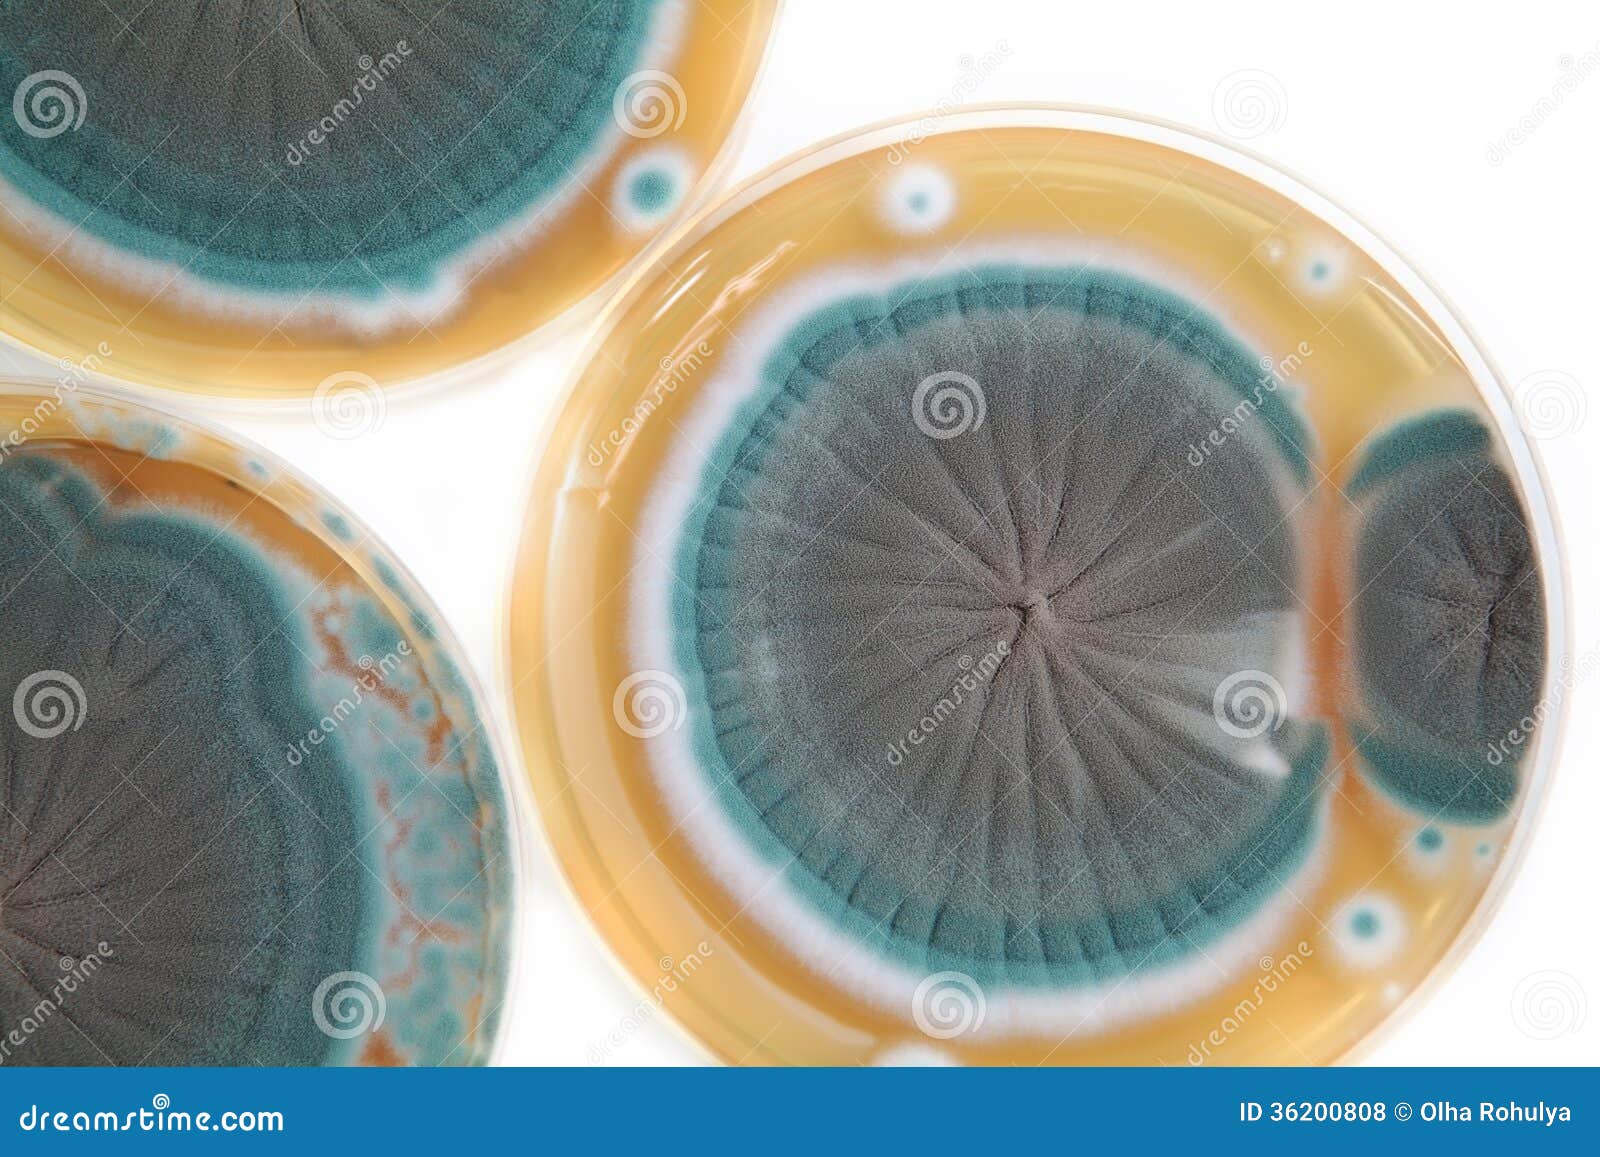 penicillium fungi on agar plate